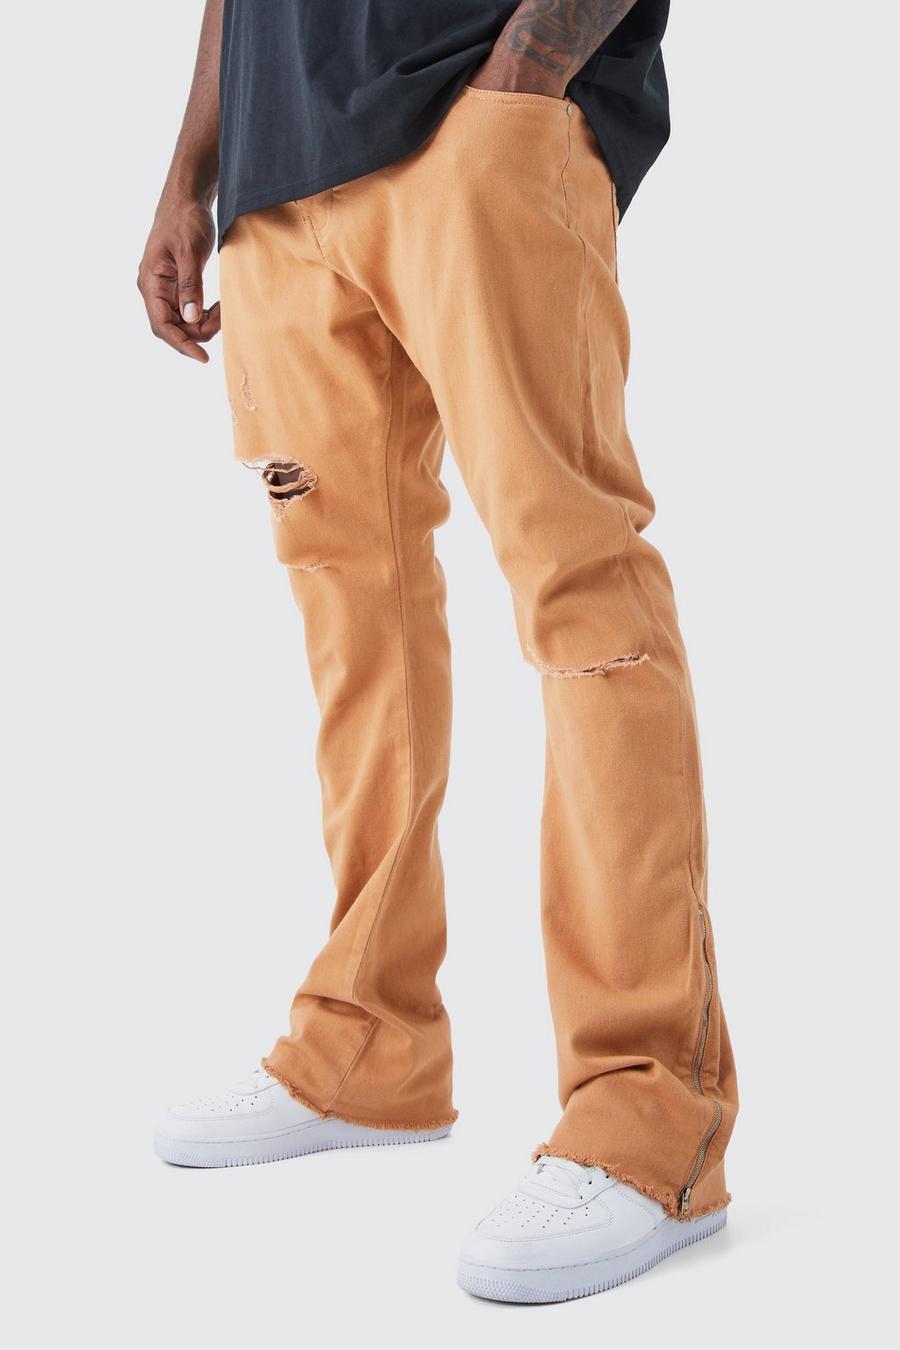 Pantalón Plus con cintura fija, desgarros cosidos, cremallera y refuerzos, Orange